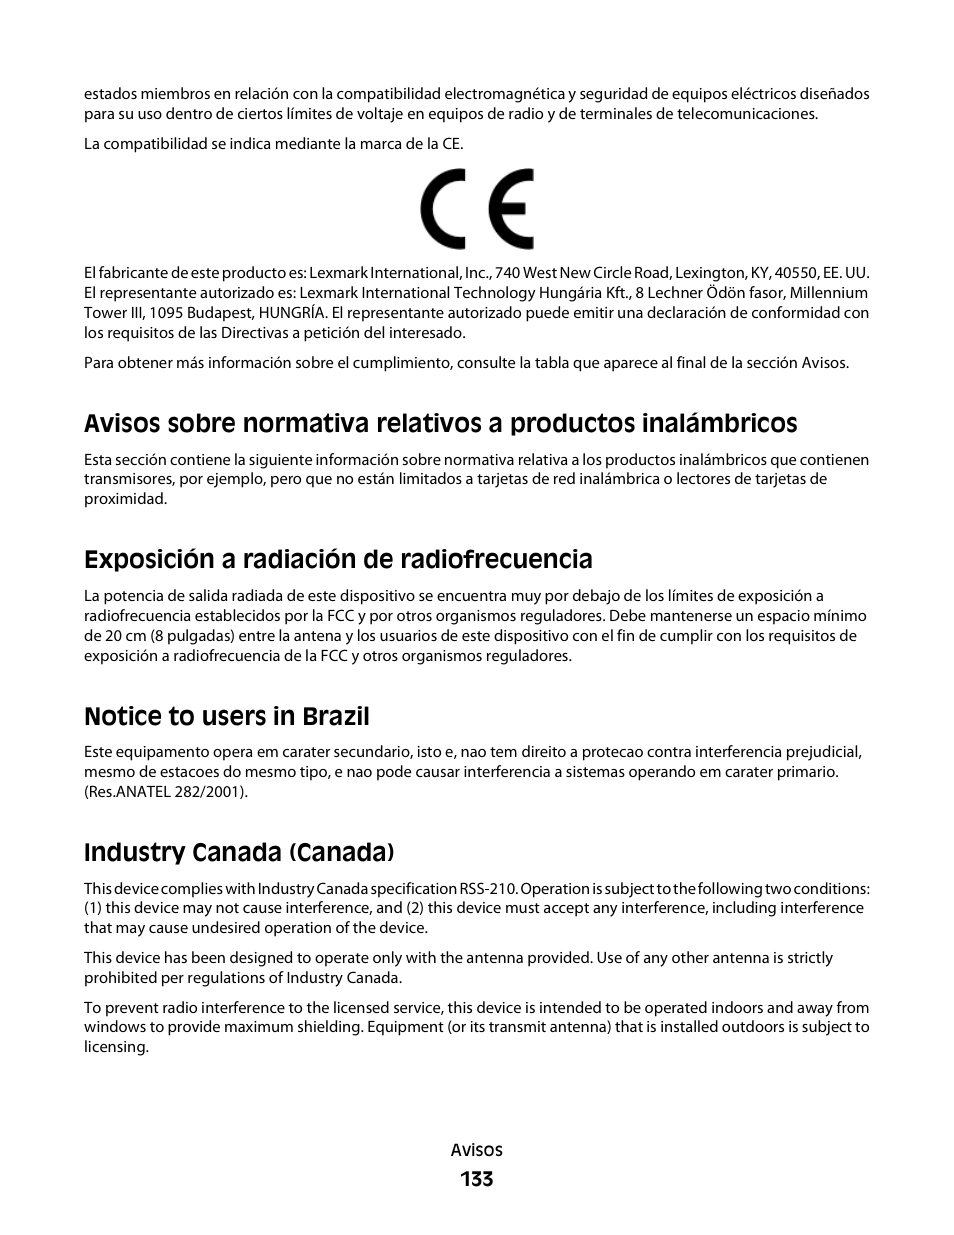 Exposición a radiación de radiofrecuencia, Notice to users in brazil, Industry canada (canada) | Dell V313 All In One Inkjet Printer Manual del usuario | Página 133 / 142